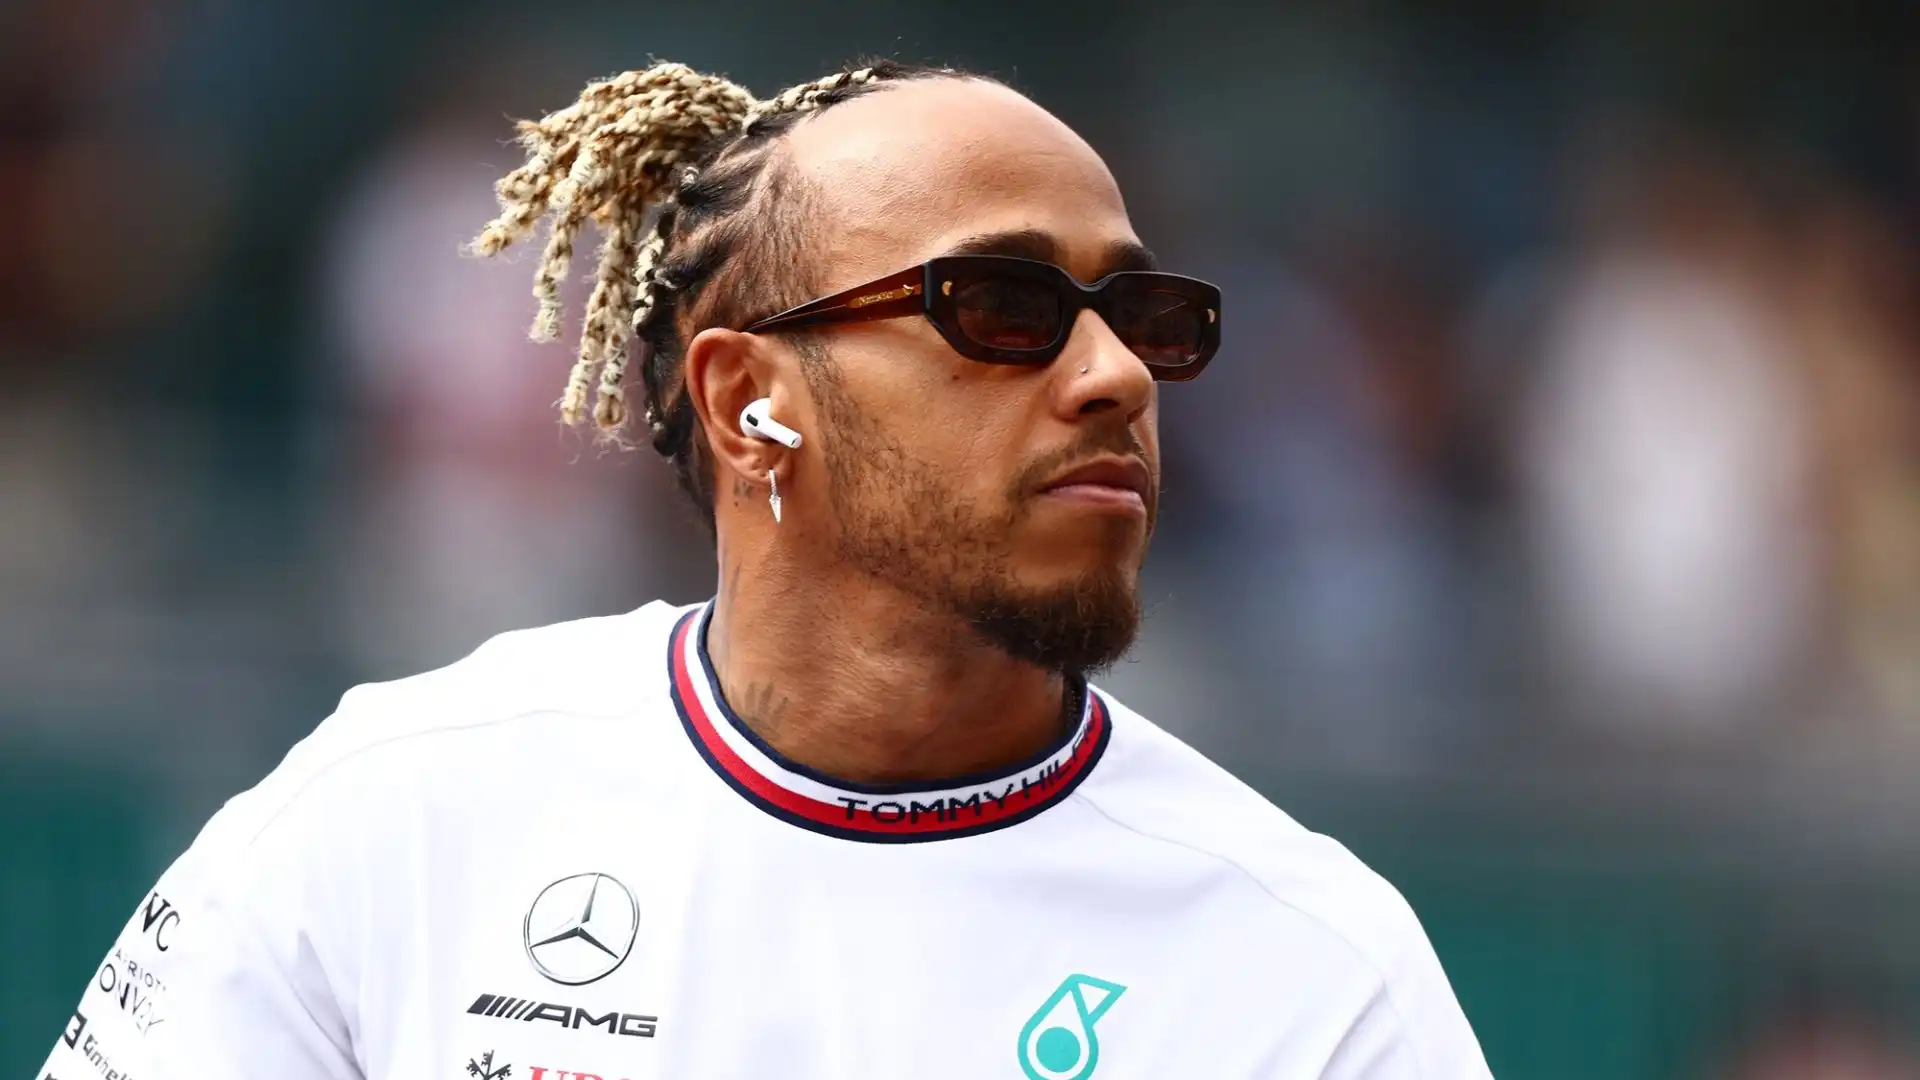 Secondo le indiscrezioni del Corriere della Sera, Hamilton vorrebbe concludere la carriera nella Scuderia